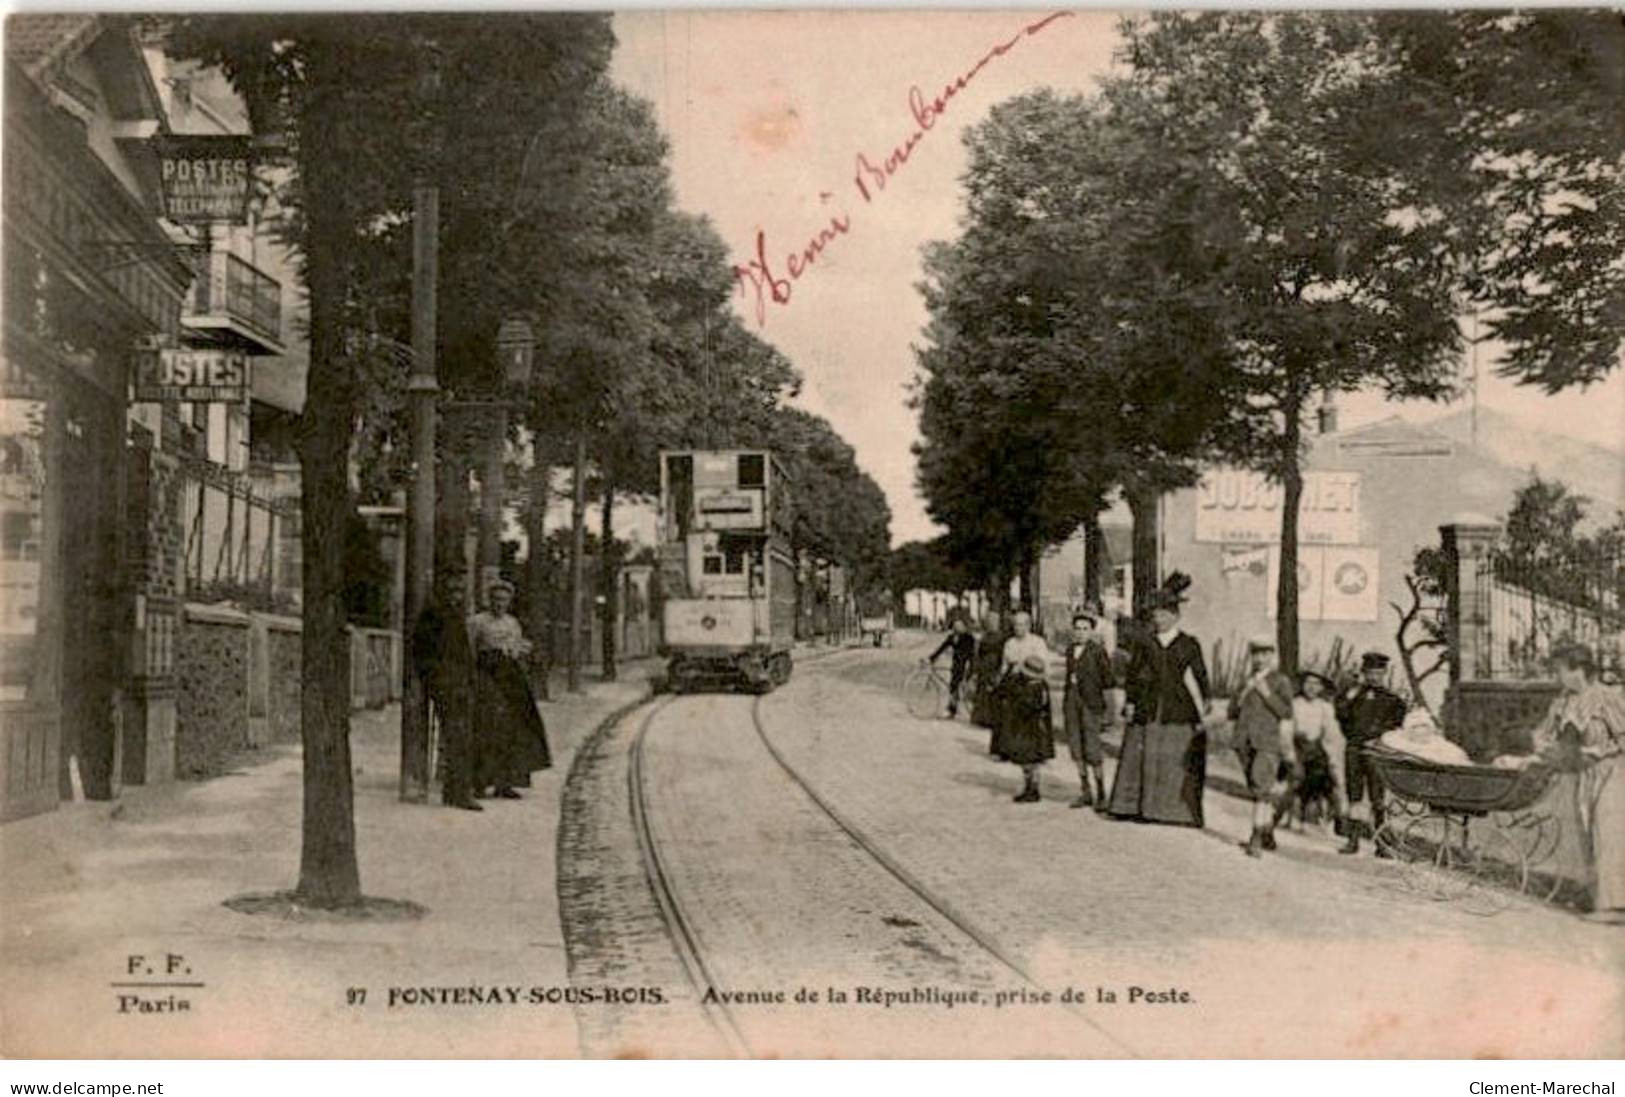 TRANSPORT: Chemin De Fer Et Tramway, Fontenay-sous-bois Avenue De La République Prise De Latenue De La République - état - Tramways